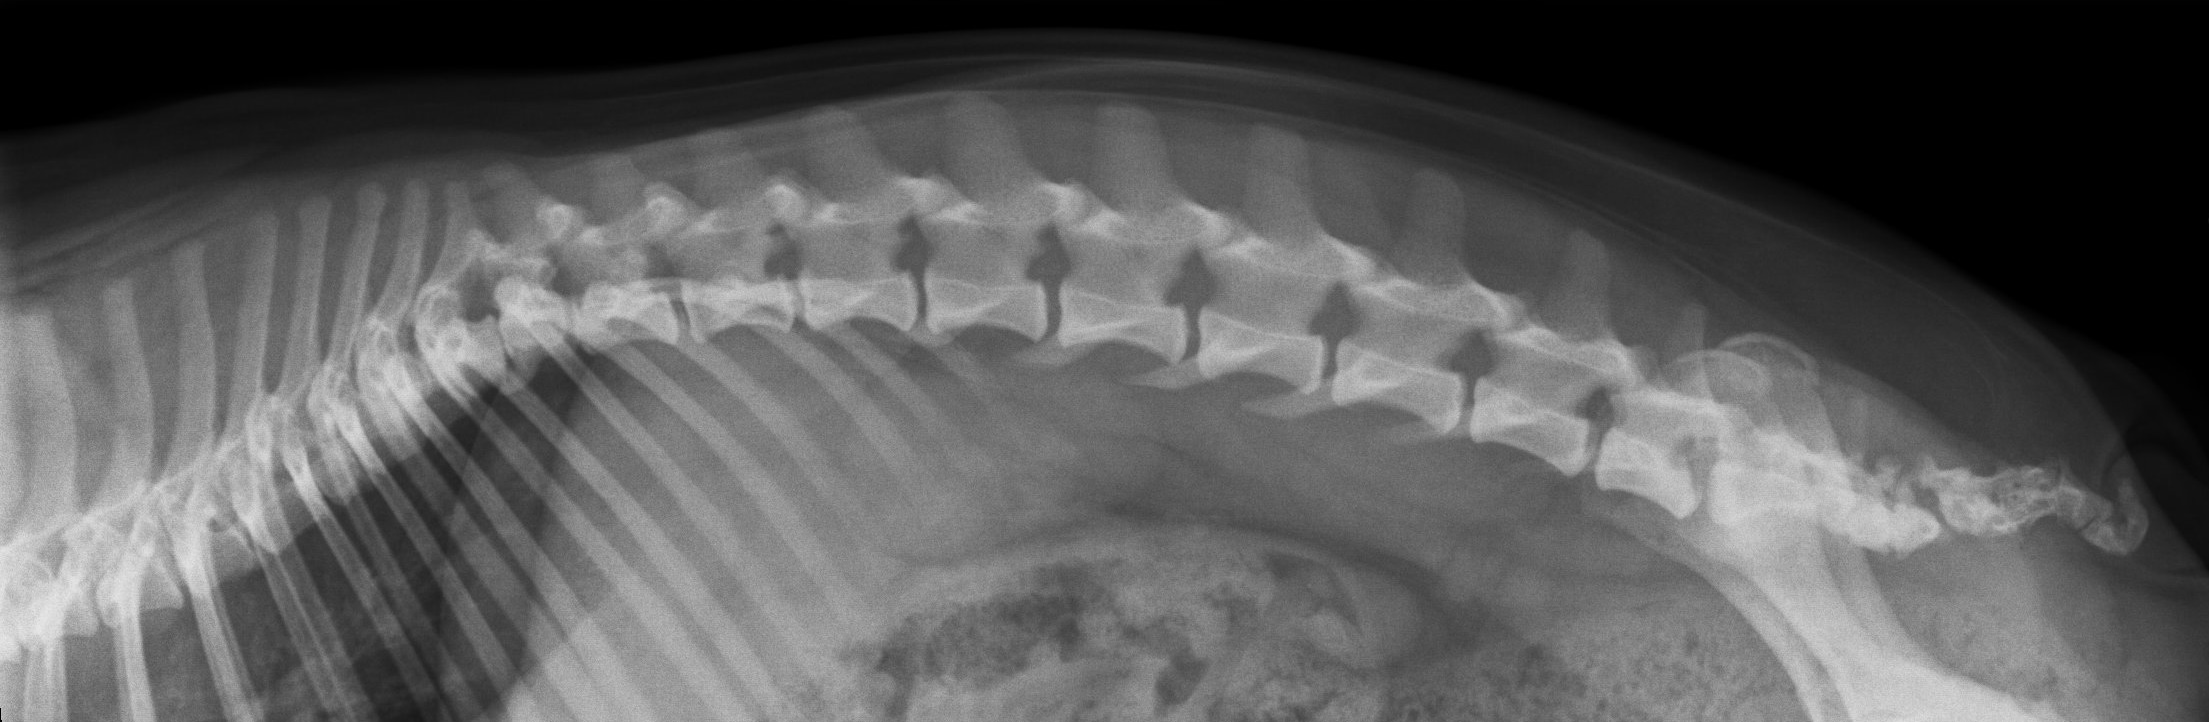 Röntgenbild von lateral links caudaler Bereich